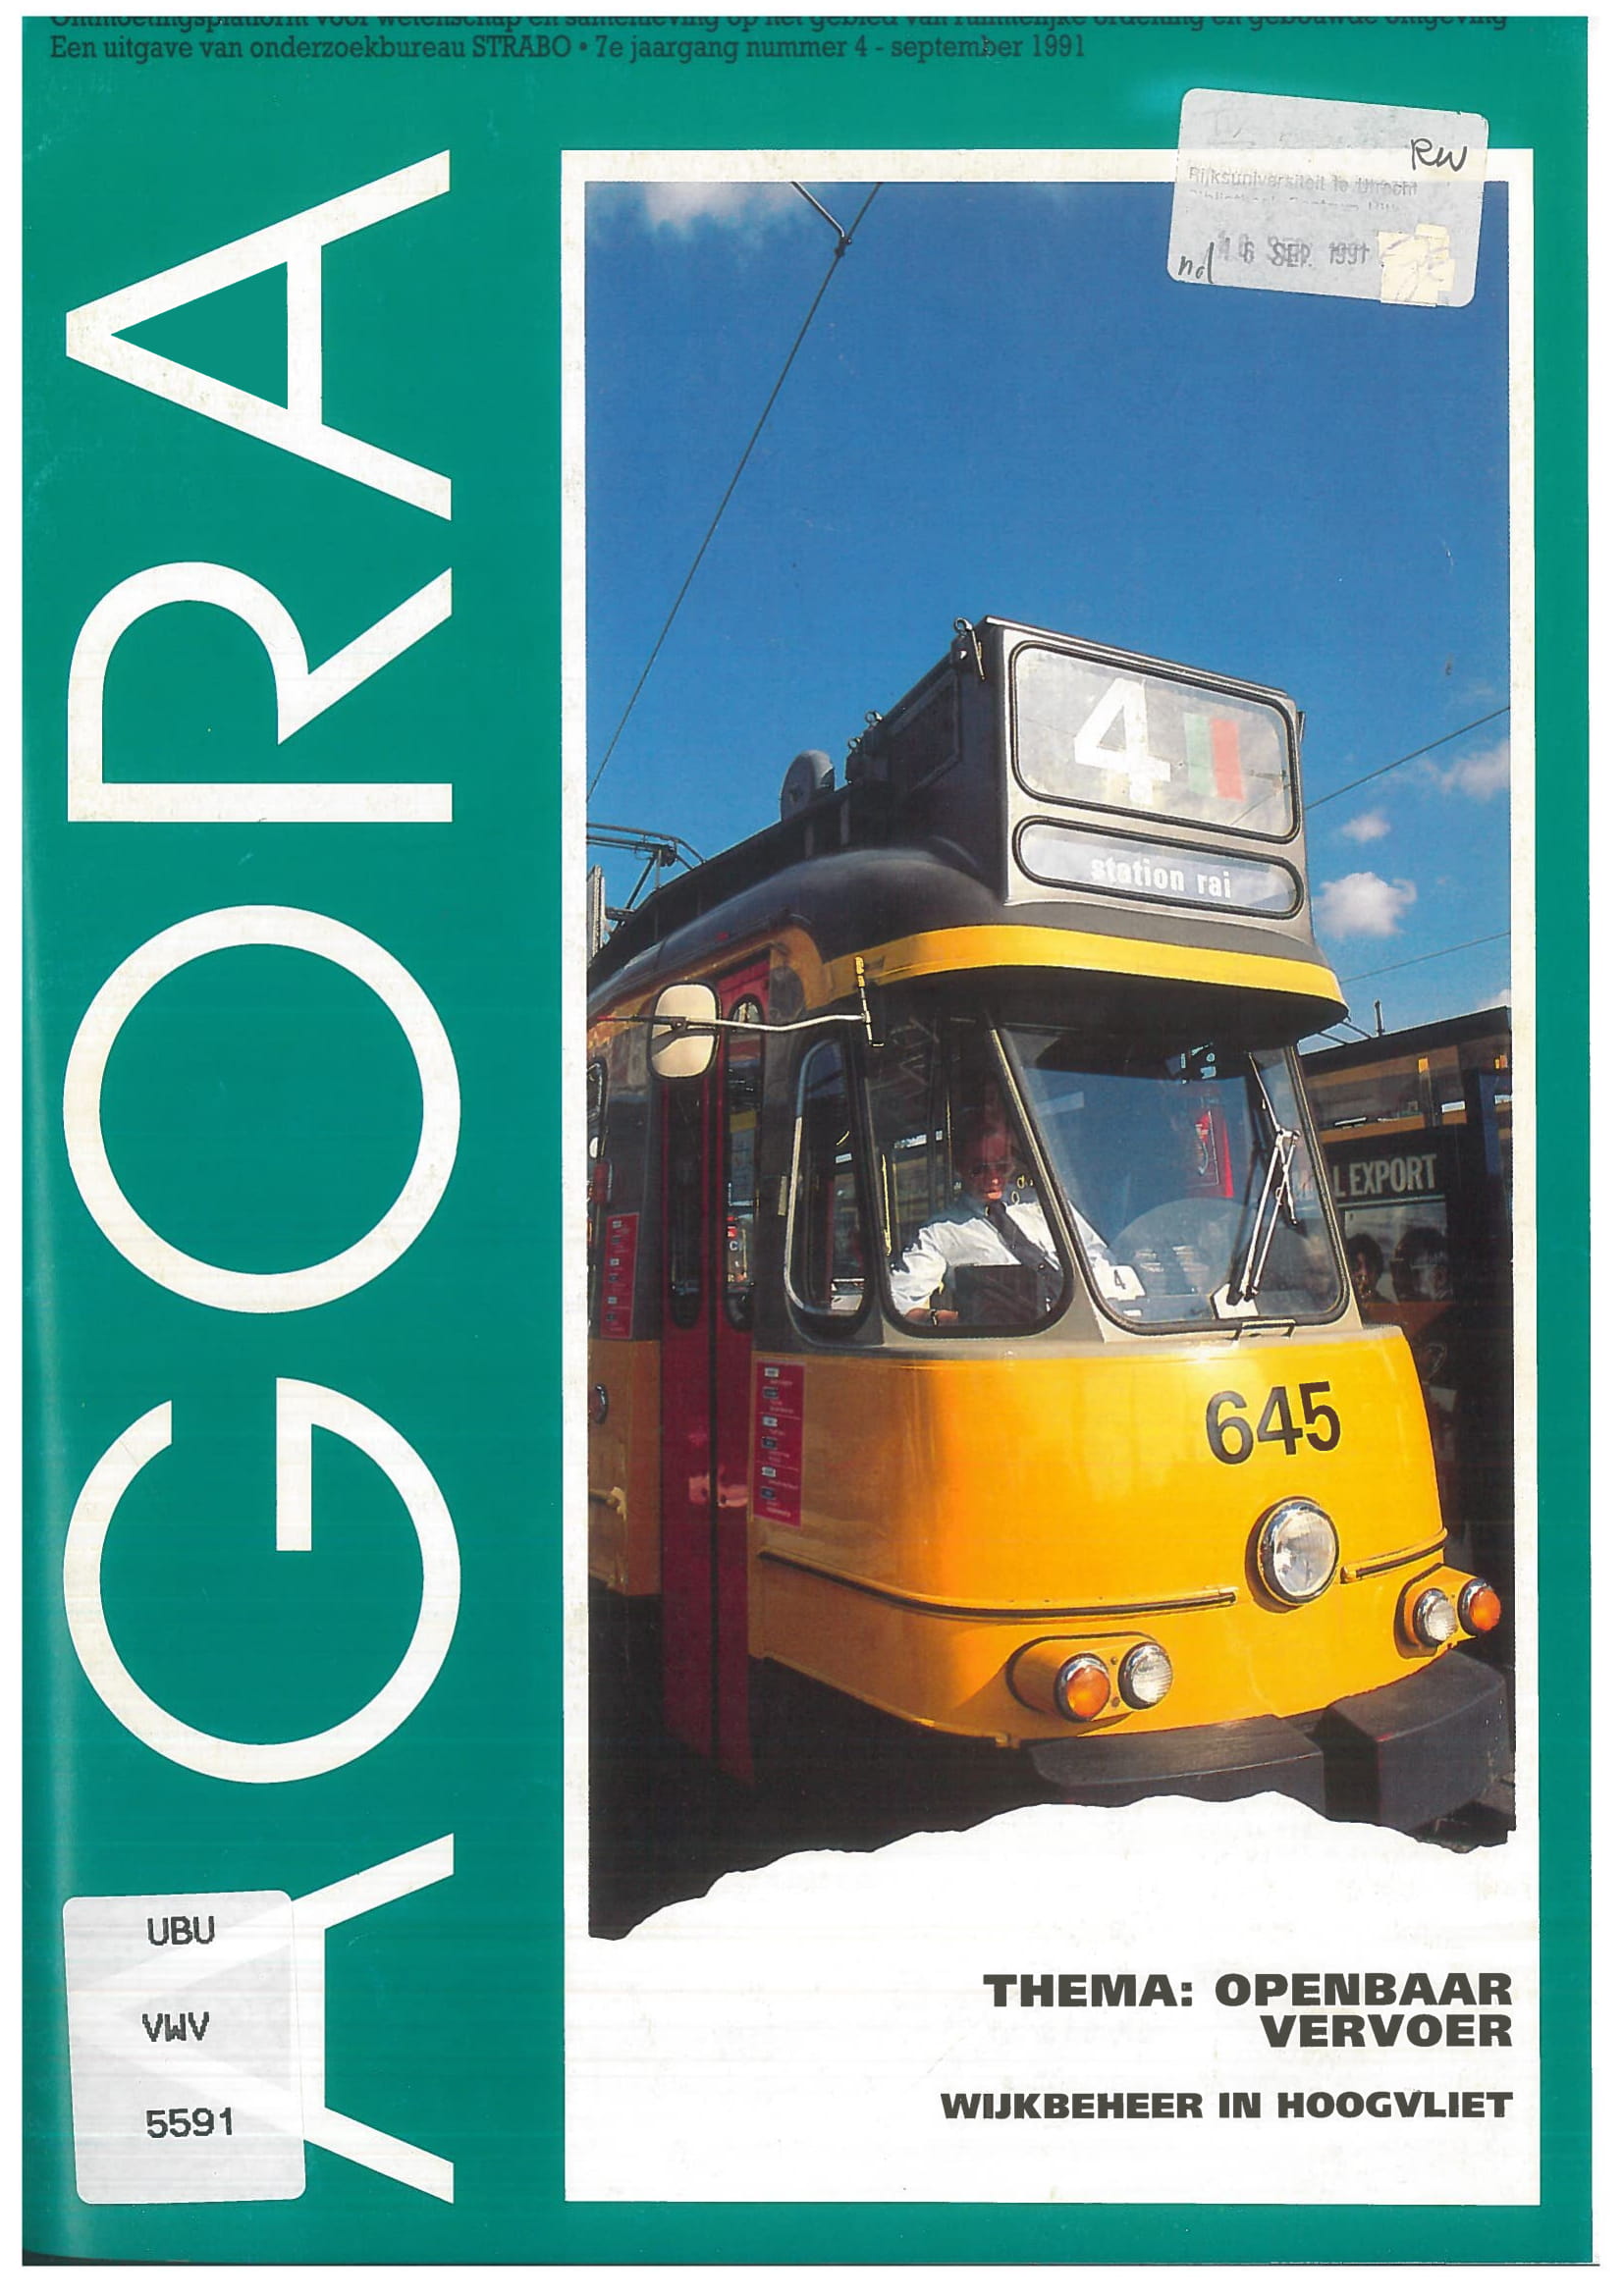 Volume 7 • Issue 4 • 1991 • Openbaar vervoer